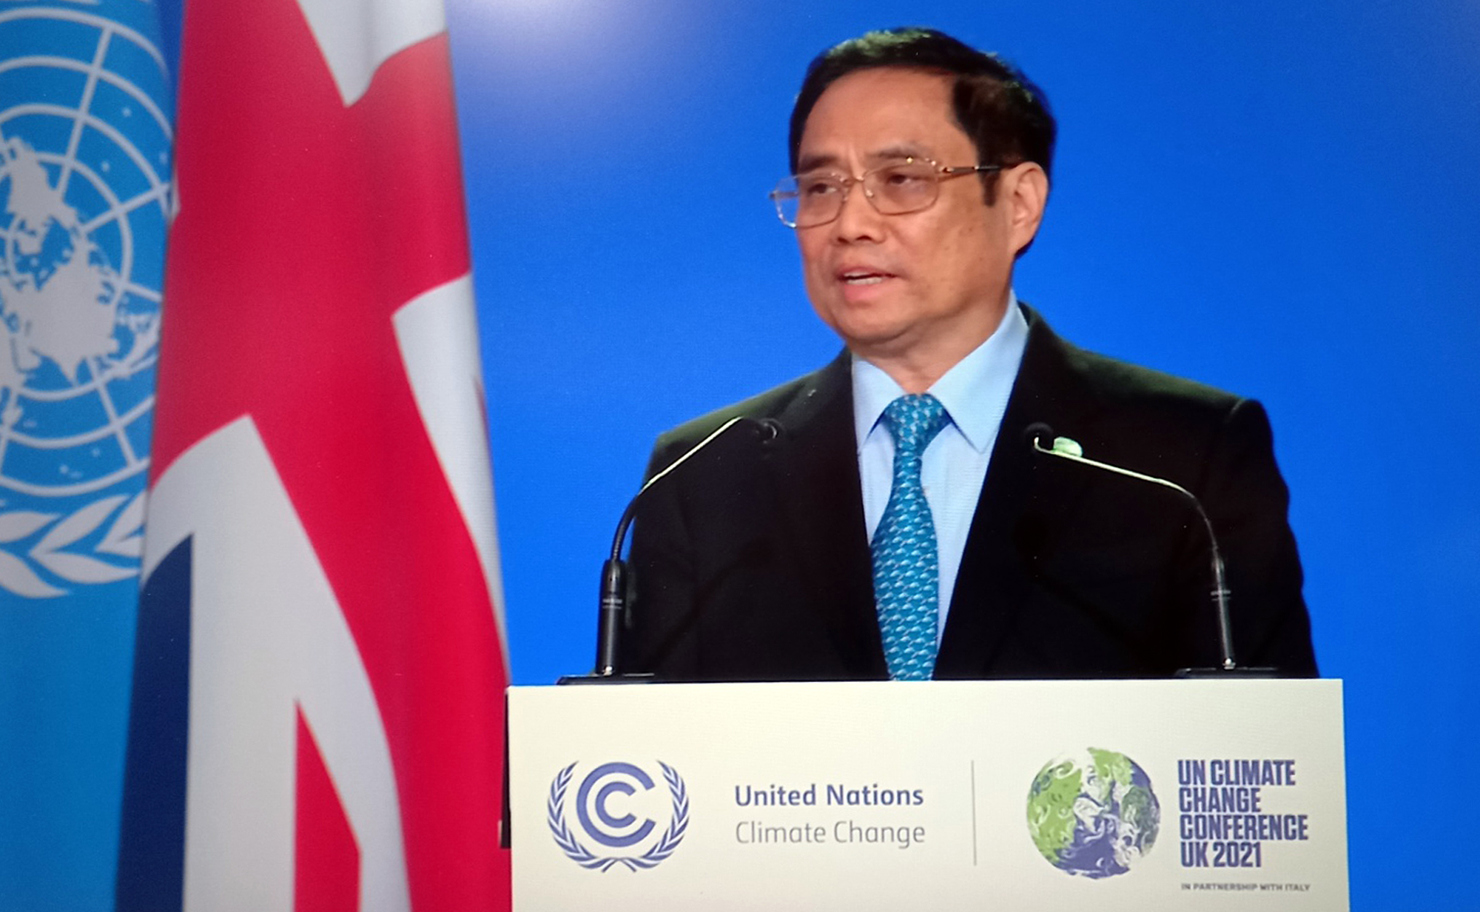 Thủ tướng khẳng định thực hiện các biện pháp mạnh mẽ để đạt mức phát thải ròng bằng 0 vào năm 2050. Nguồn: chinhphu.vn